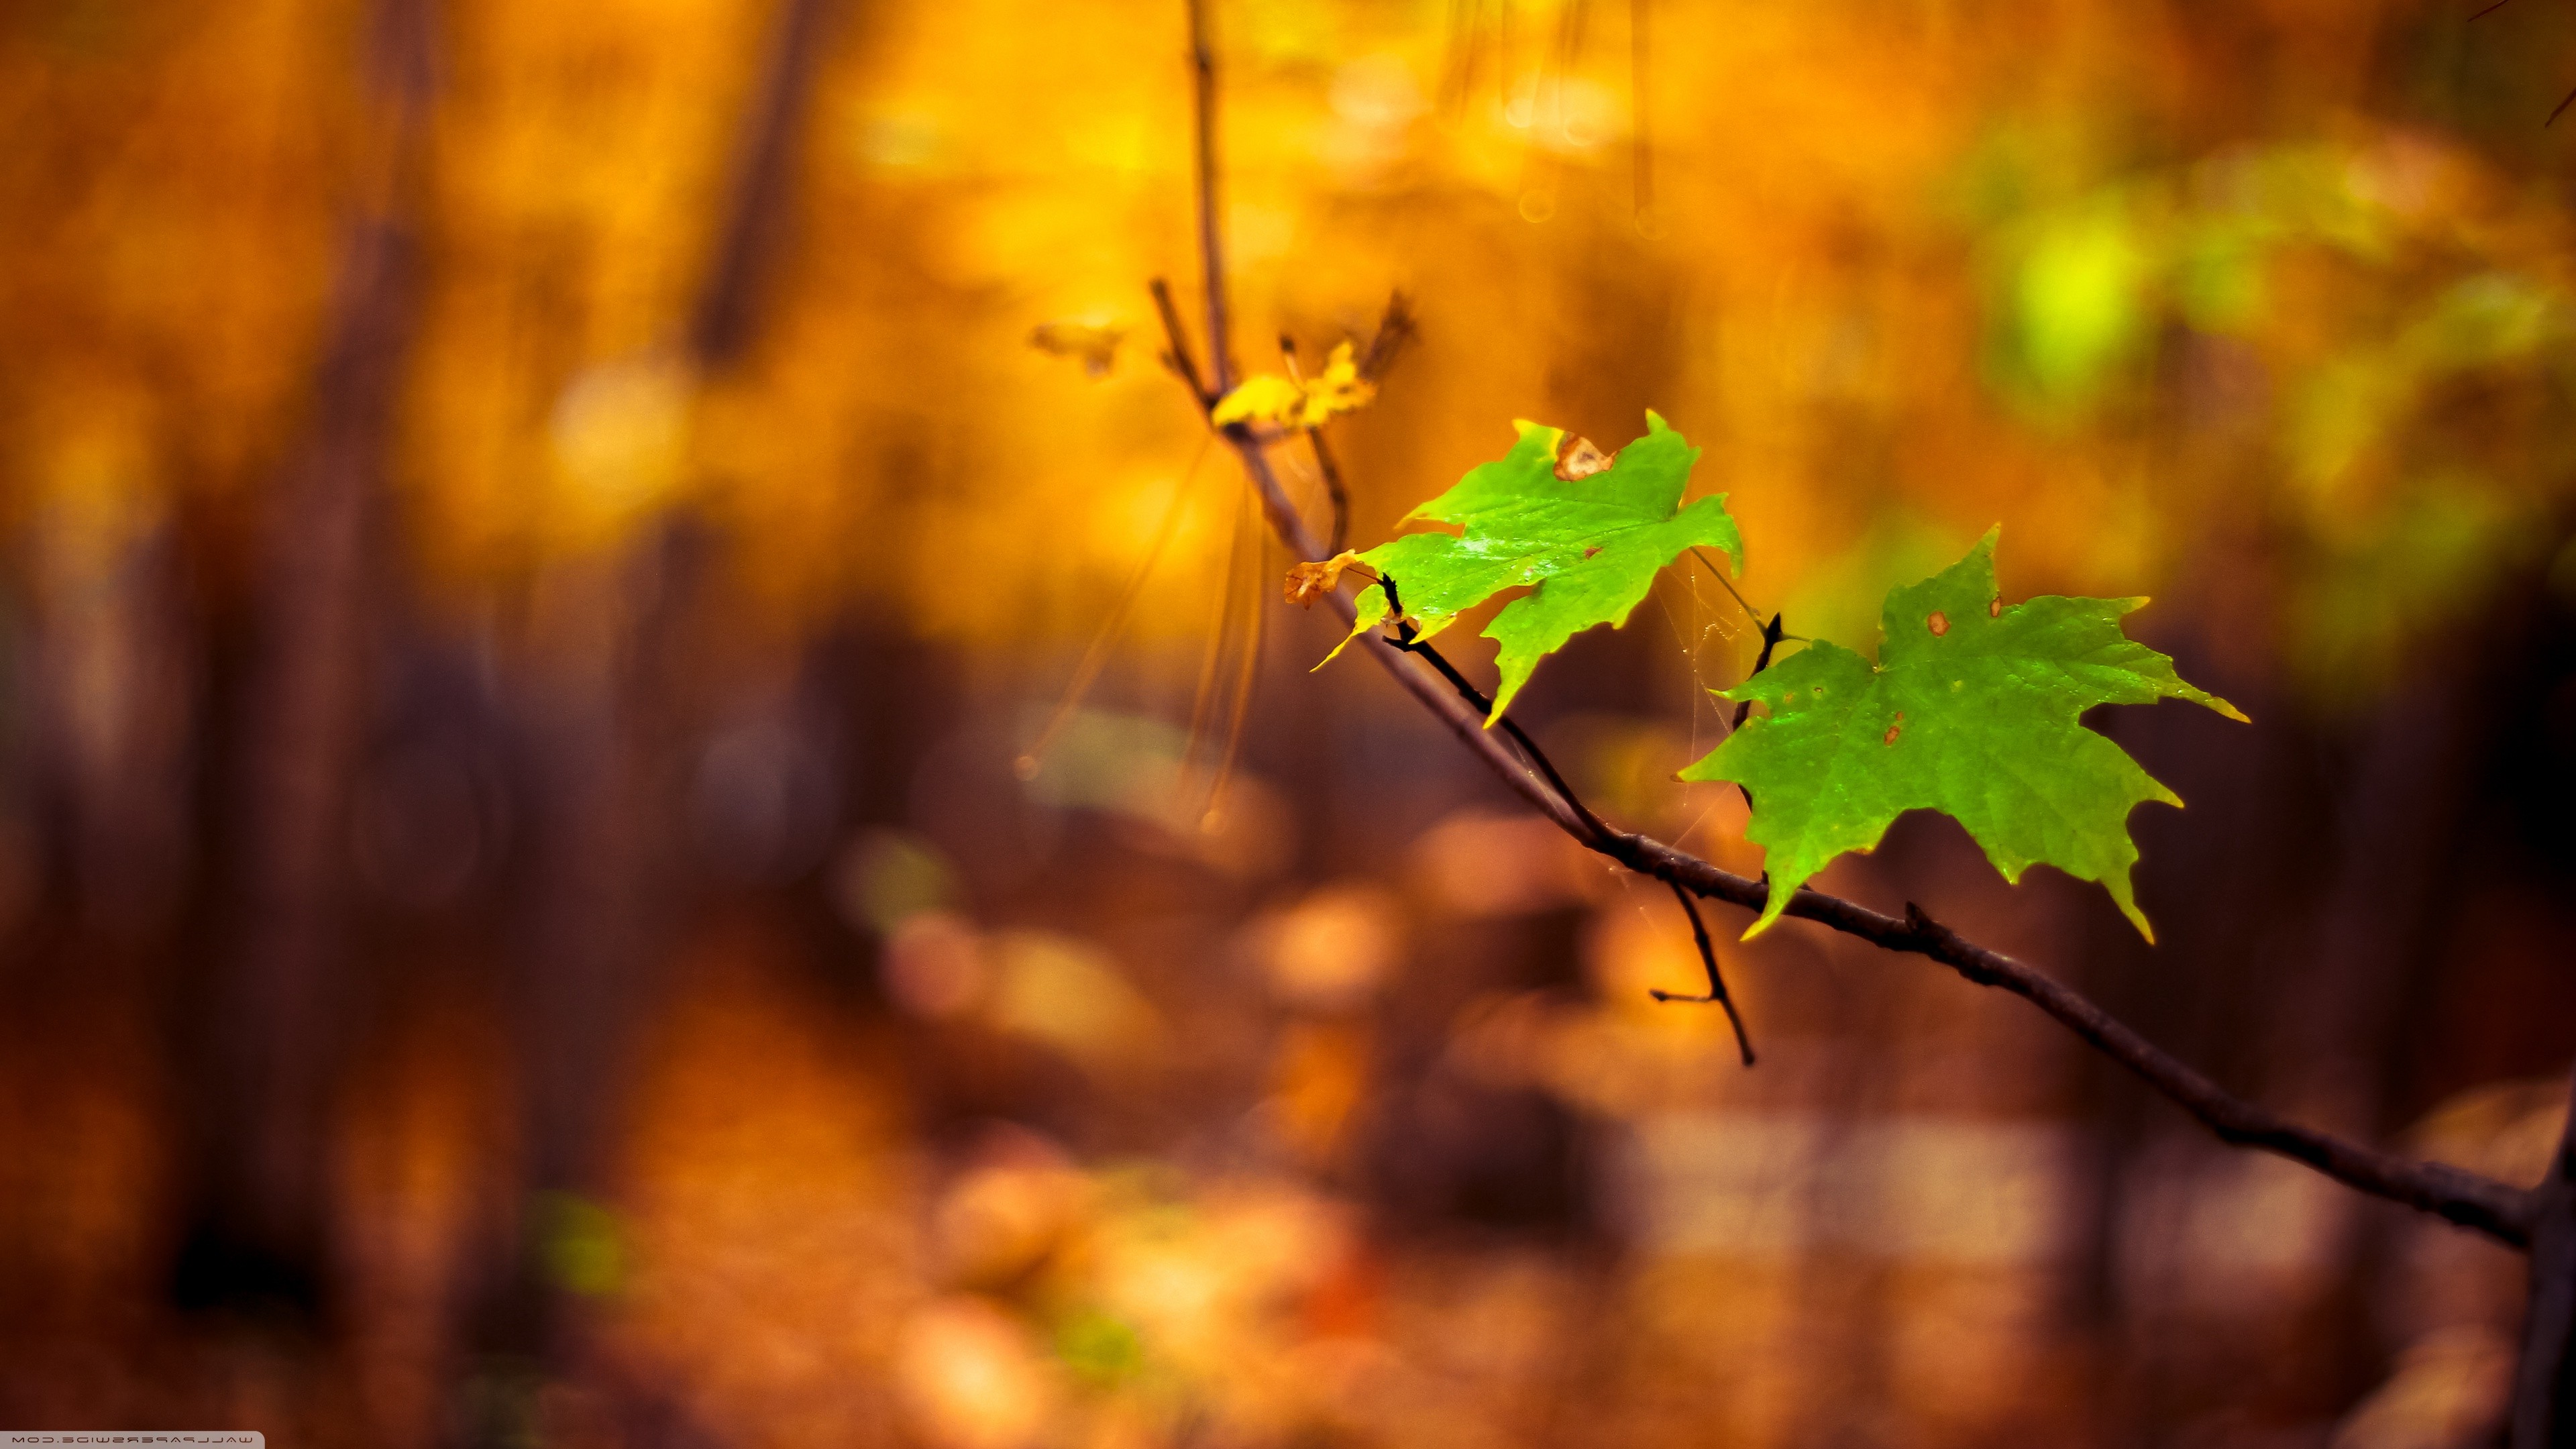 Nature Macro Leaves Blurred Wallpaper HD Desktop And Mobile